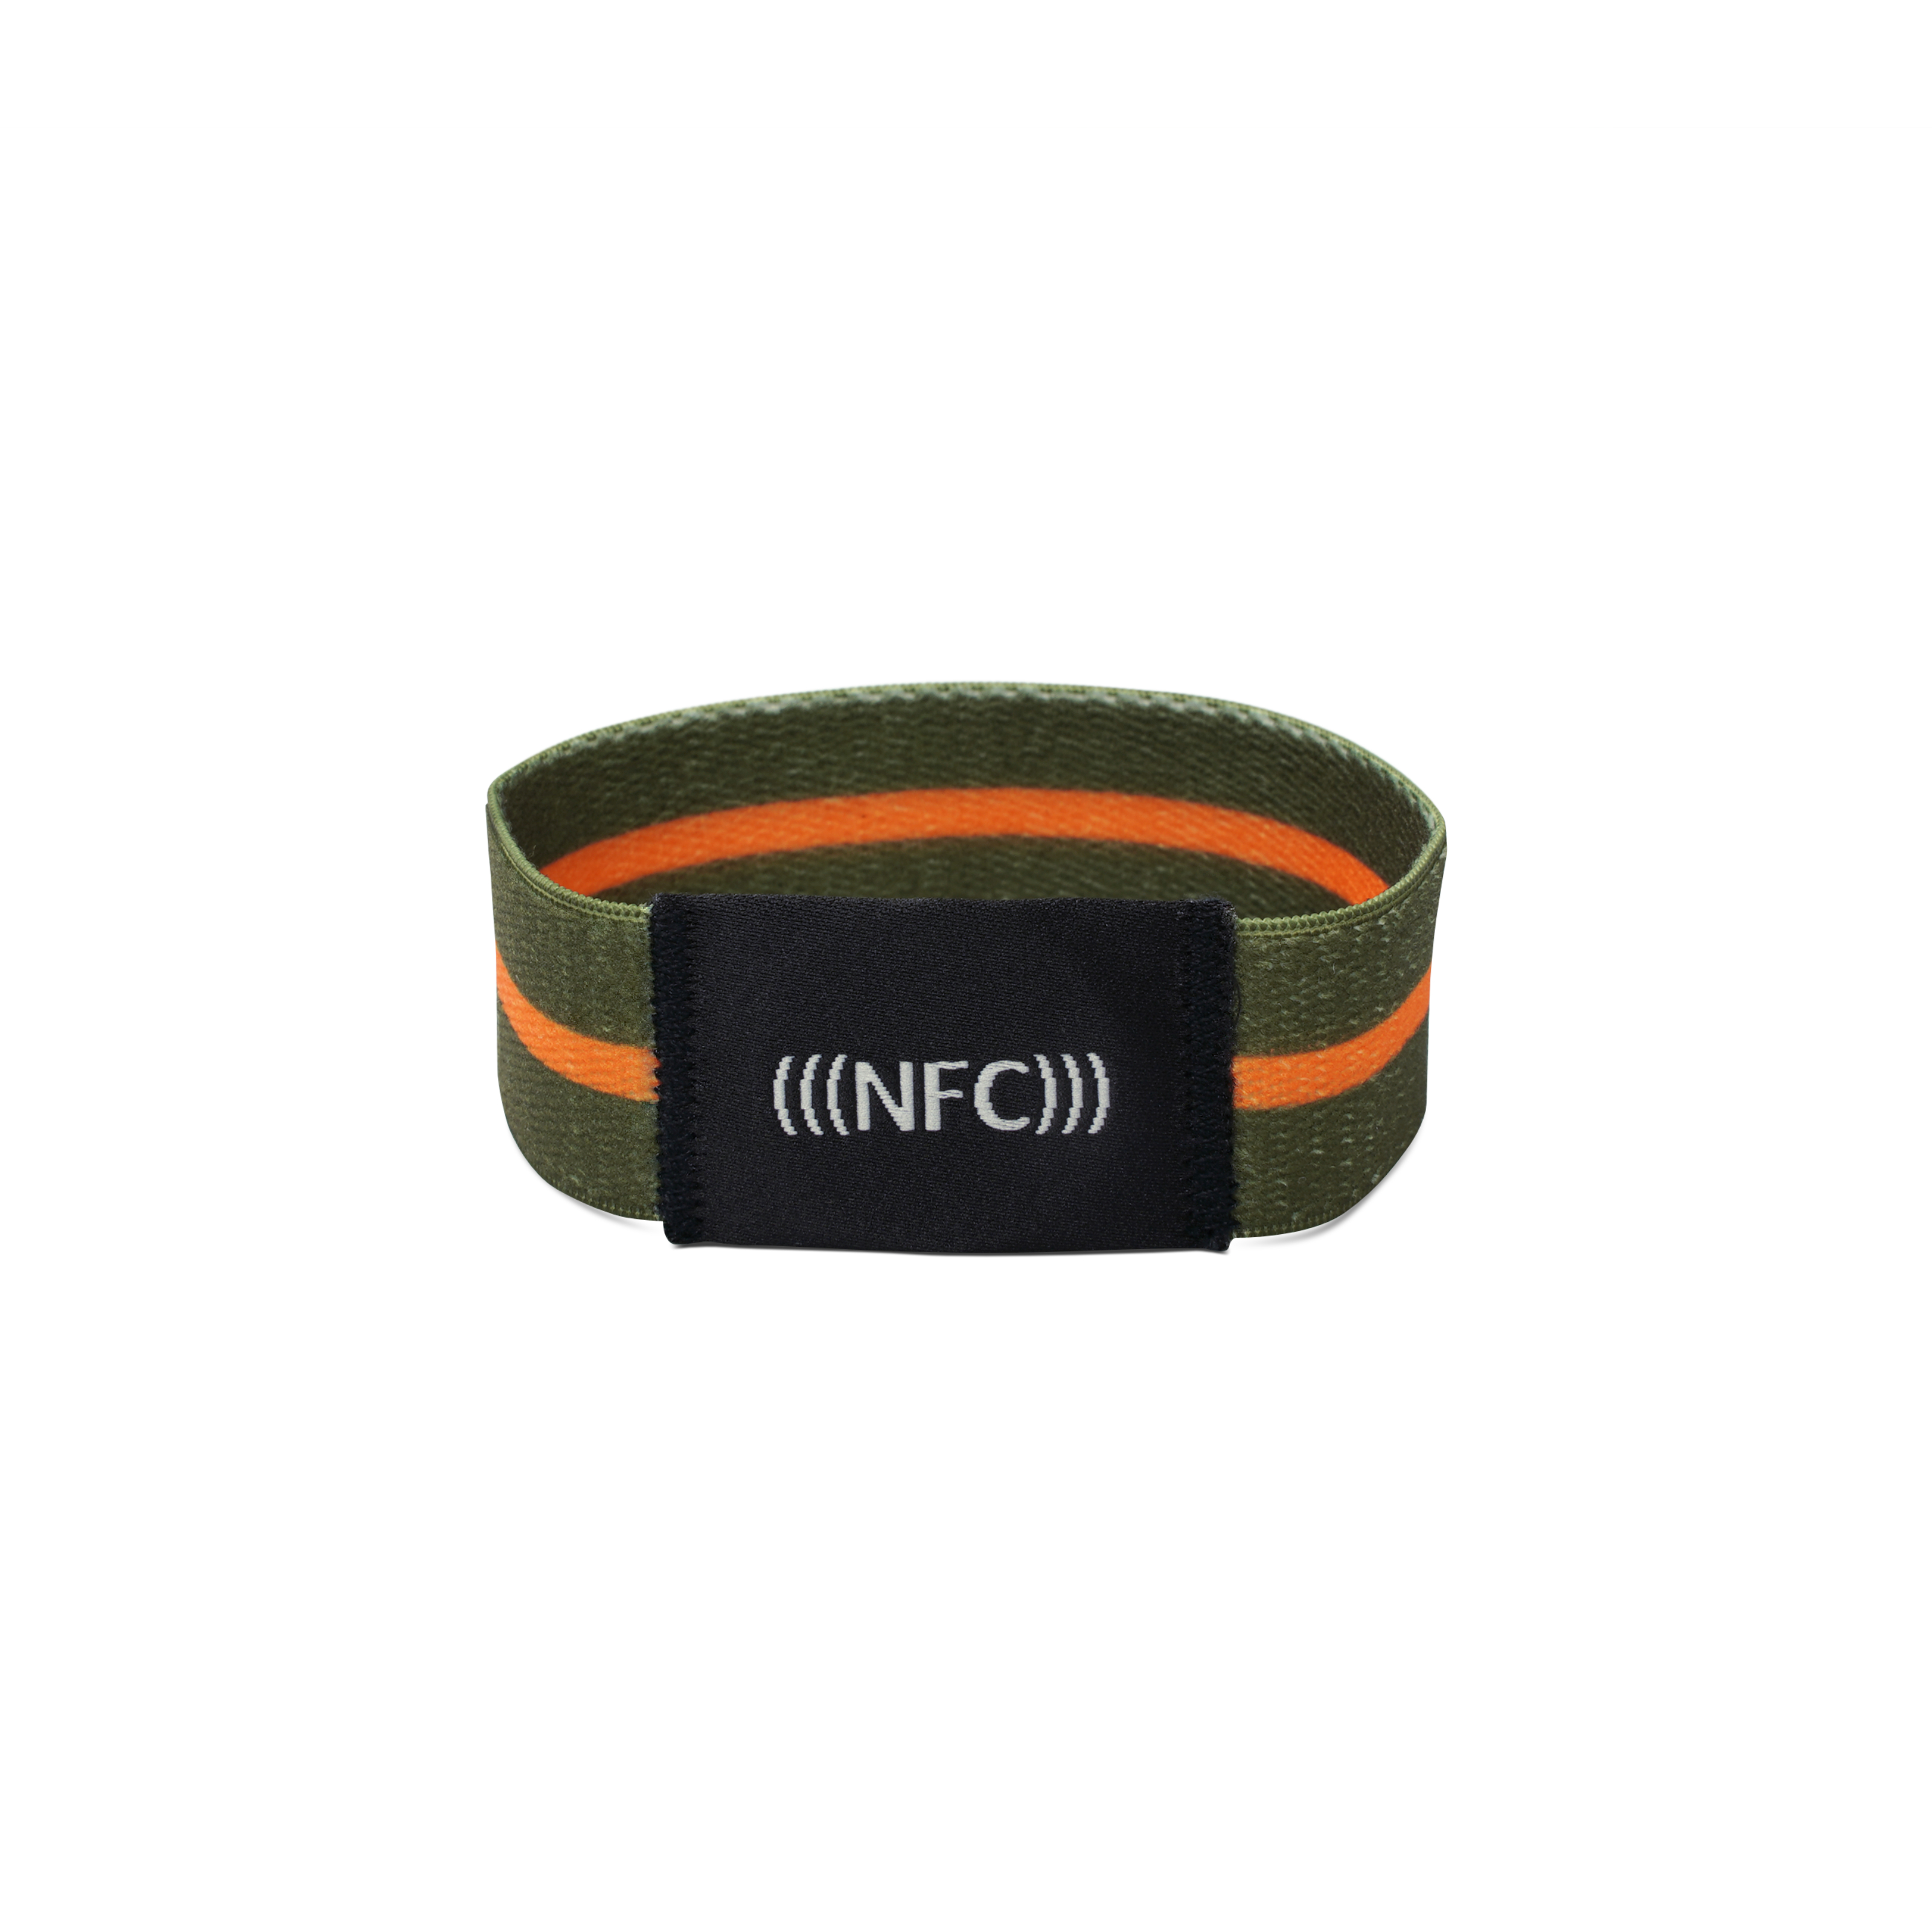 Vorderseite NFC Armband aus grünem Stoff mit orangenem Streifen und "NFC" Aufstickung